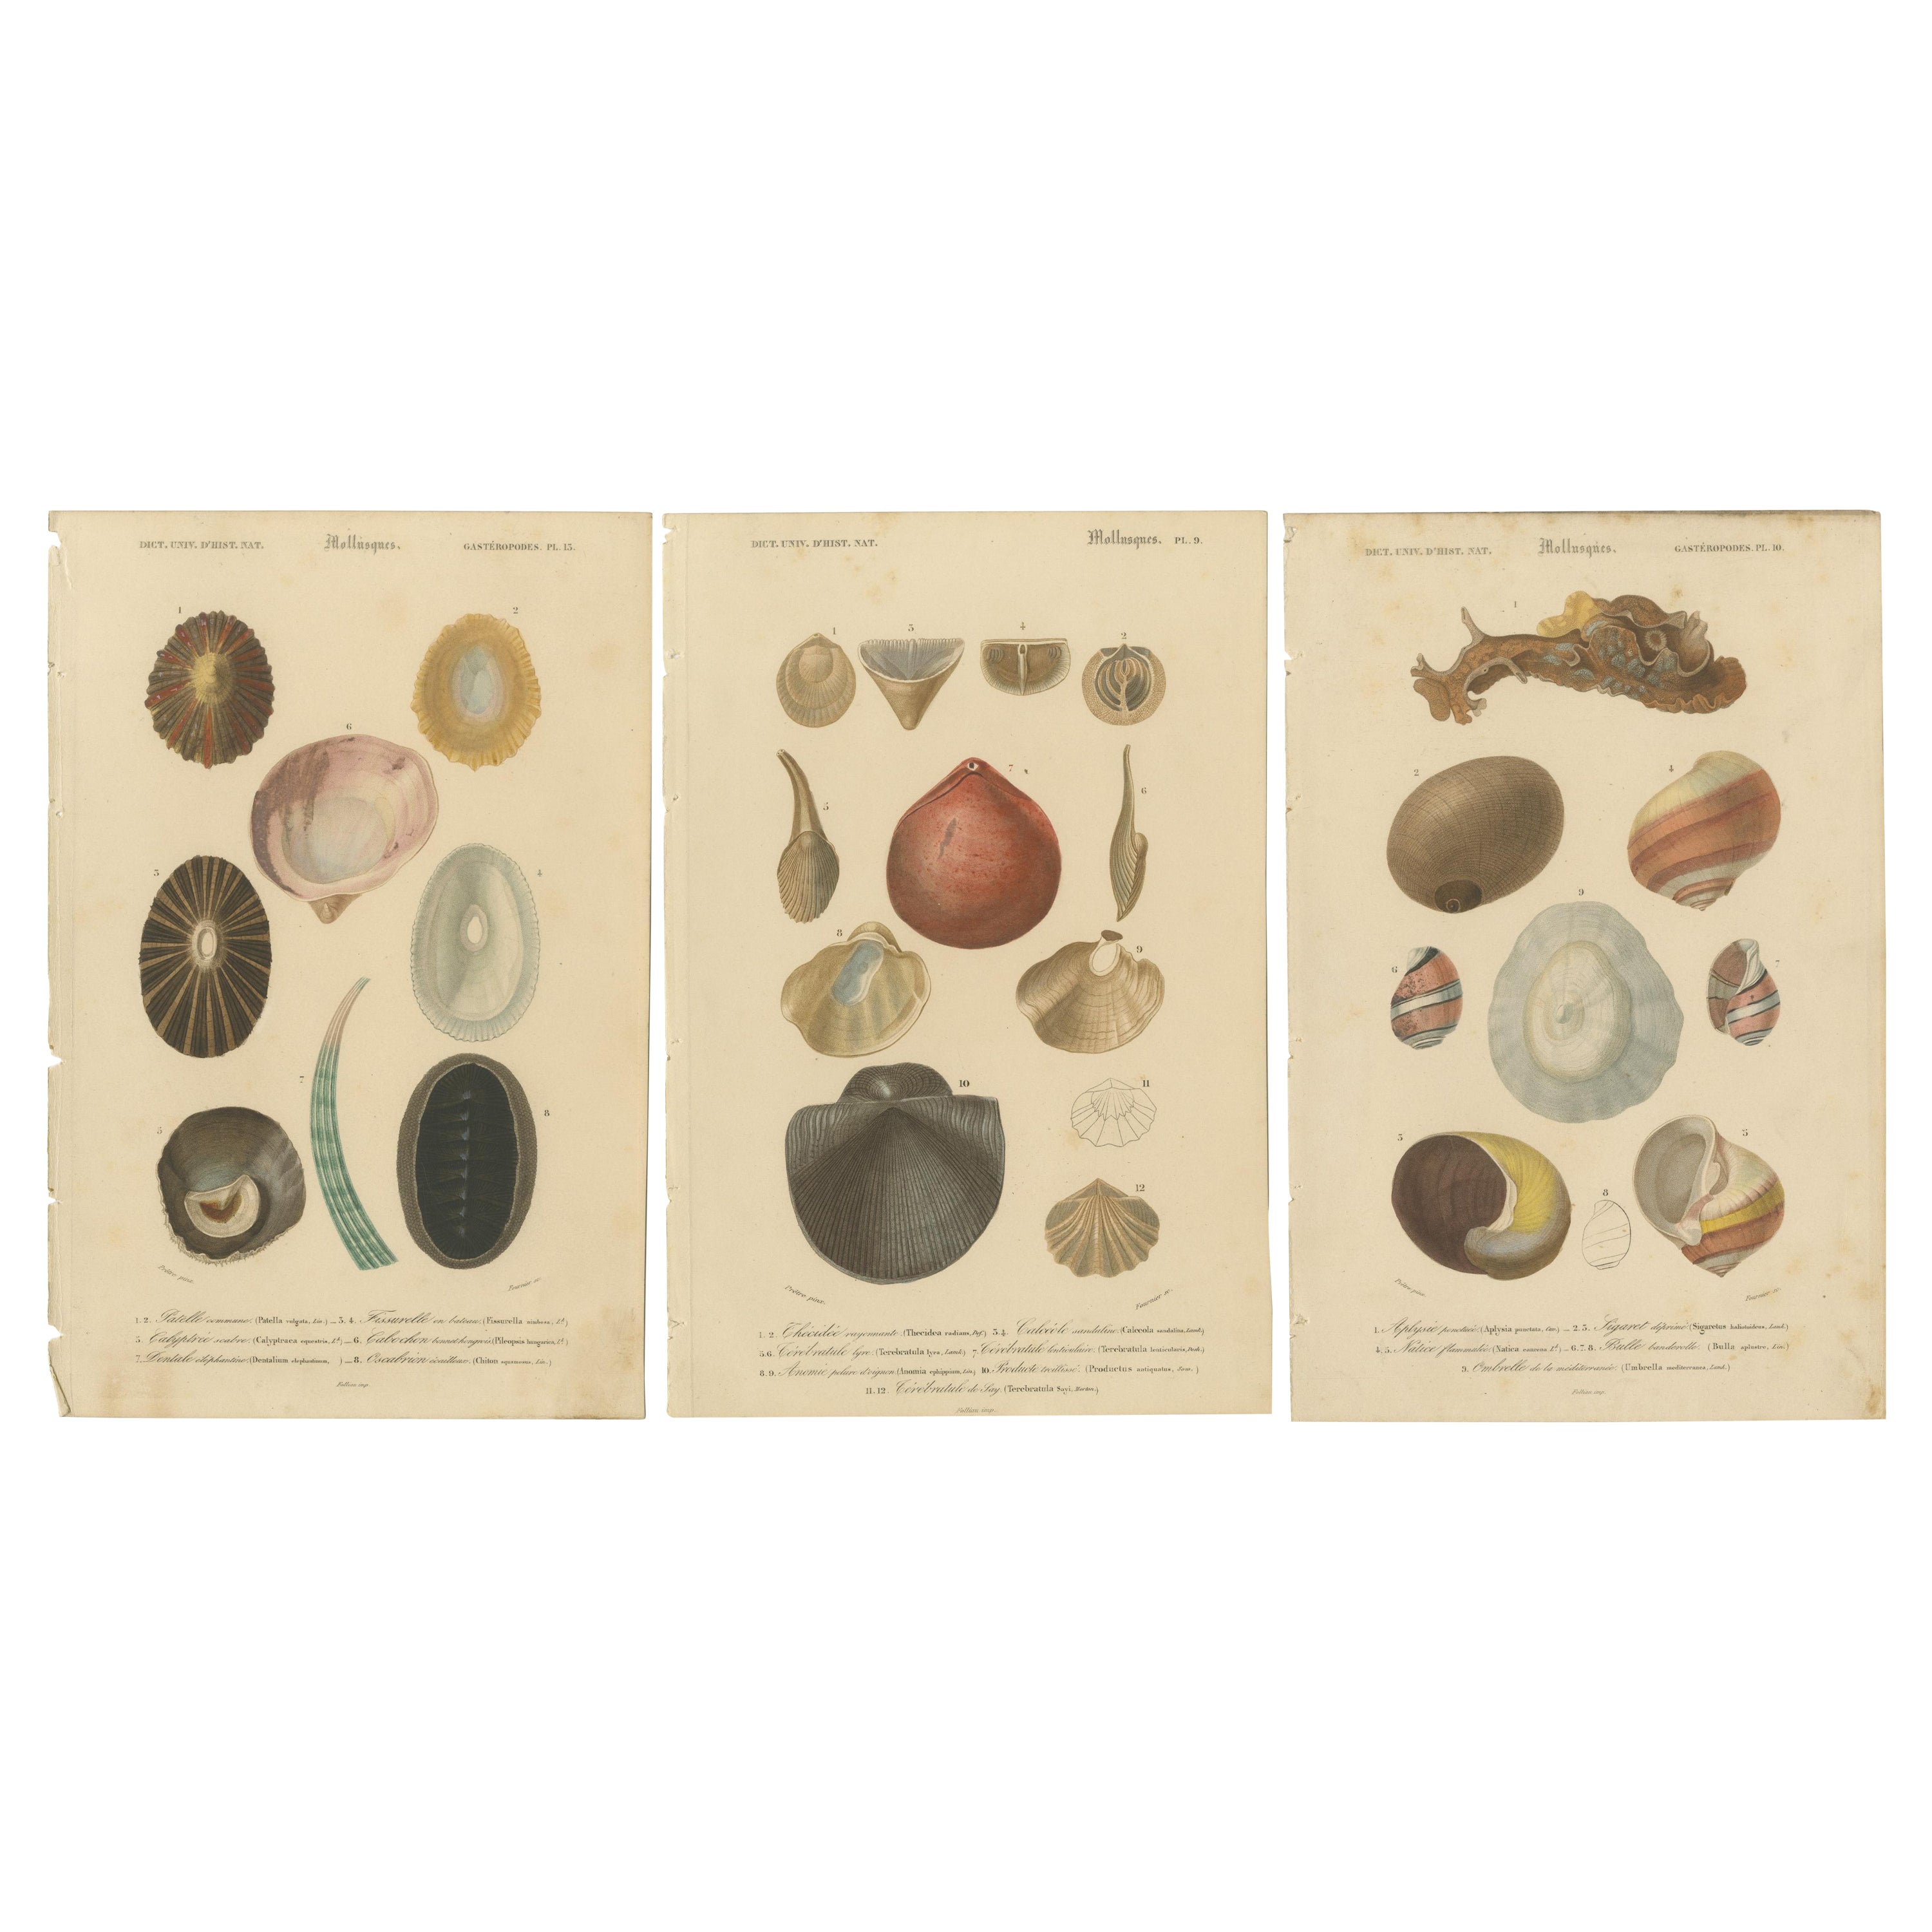 Chefs-d'œuvre des mollusques marins : L'art des profondeurs, coloré à la main en 1849